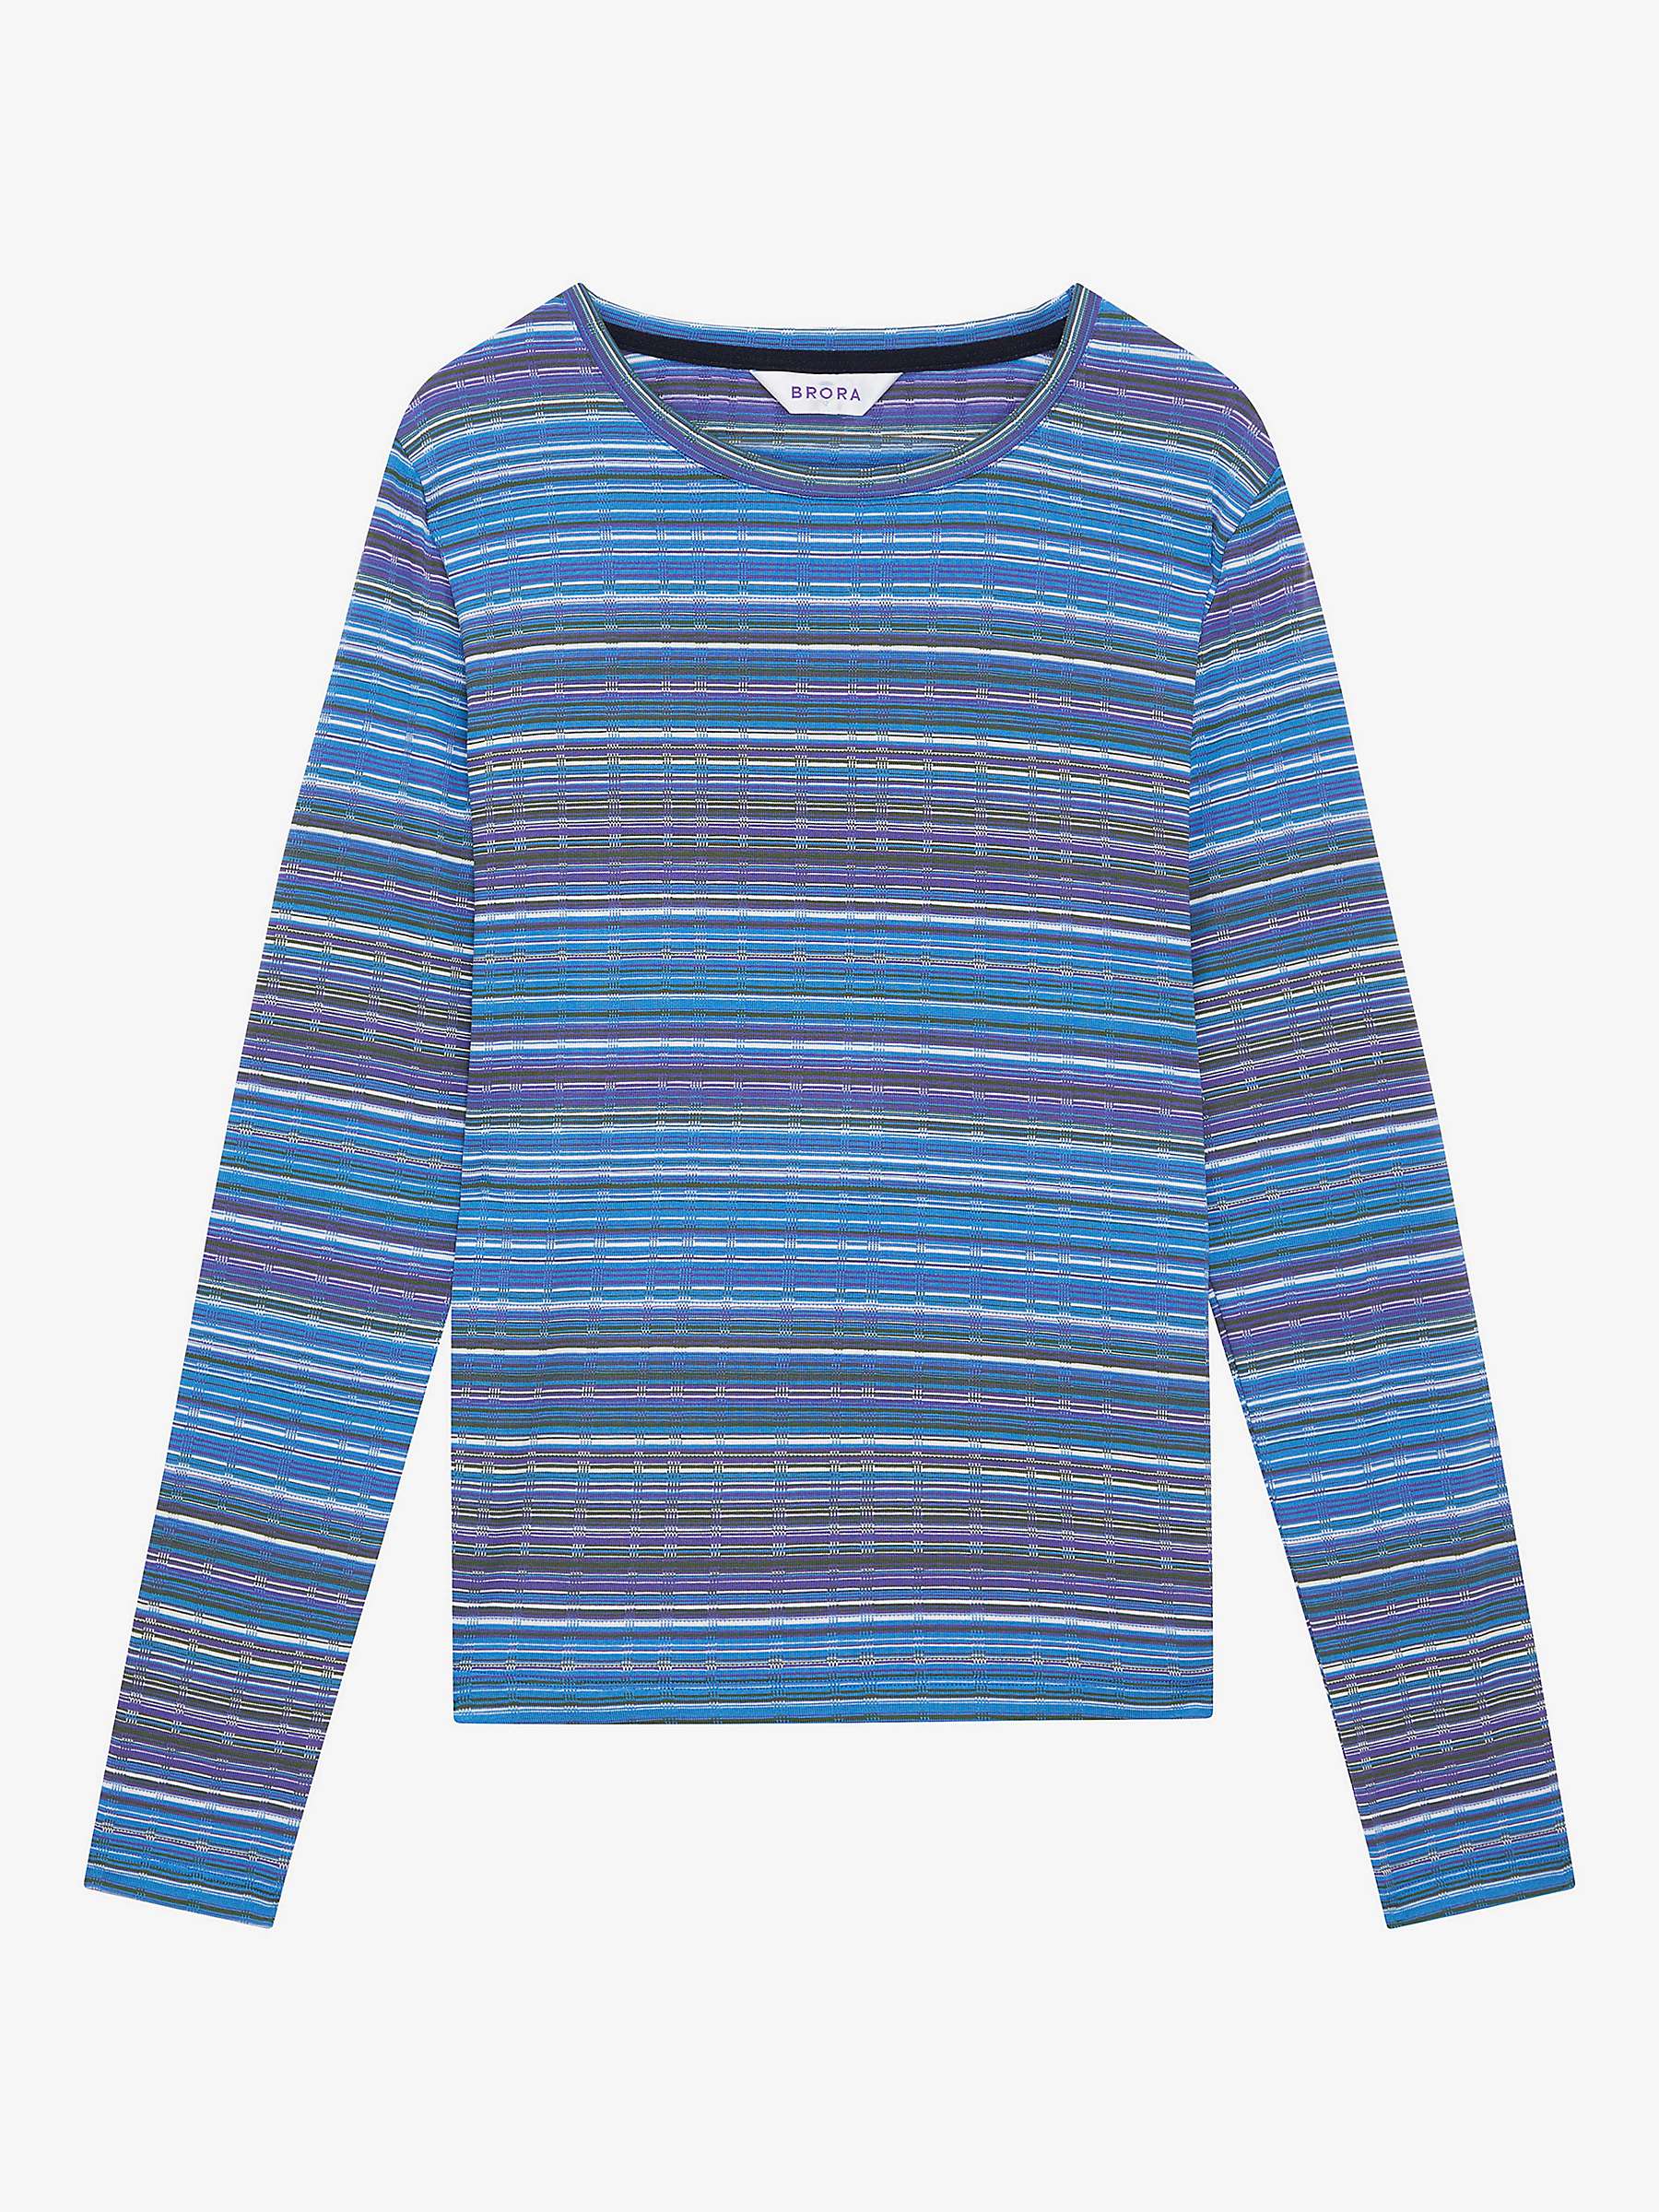 Buy Brora Fine Stripe Jersey Top, Violet/Sky Online at johnlewis.com